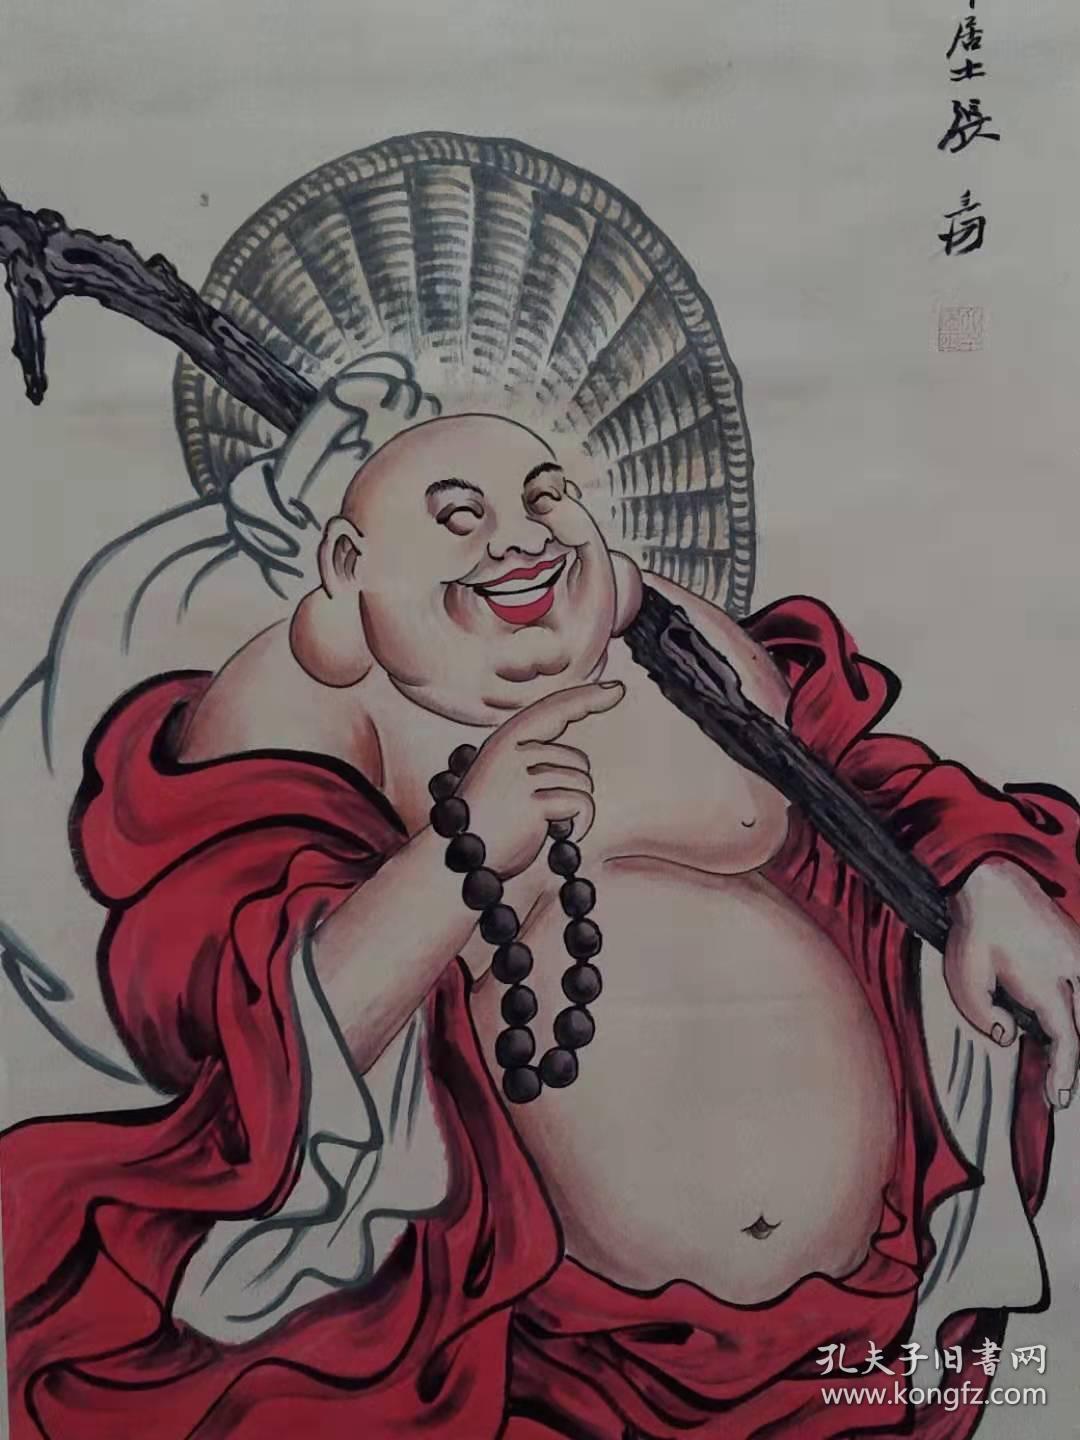 【大肚无量】弥勒佛  佛像立轴，大肚容  容天下之难容事丶开口笑  笑世间可笑之人！